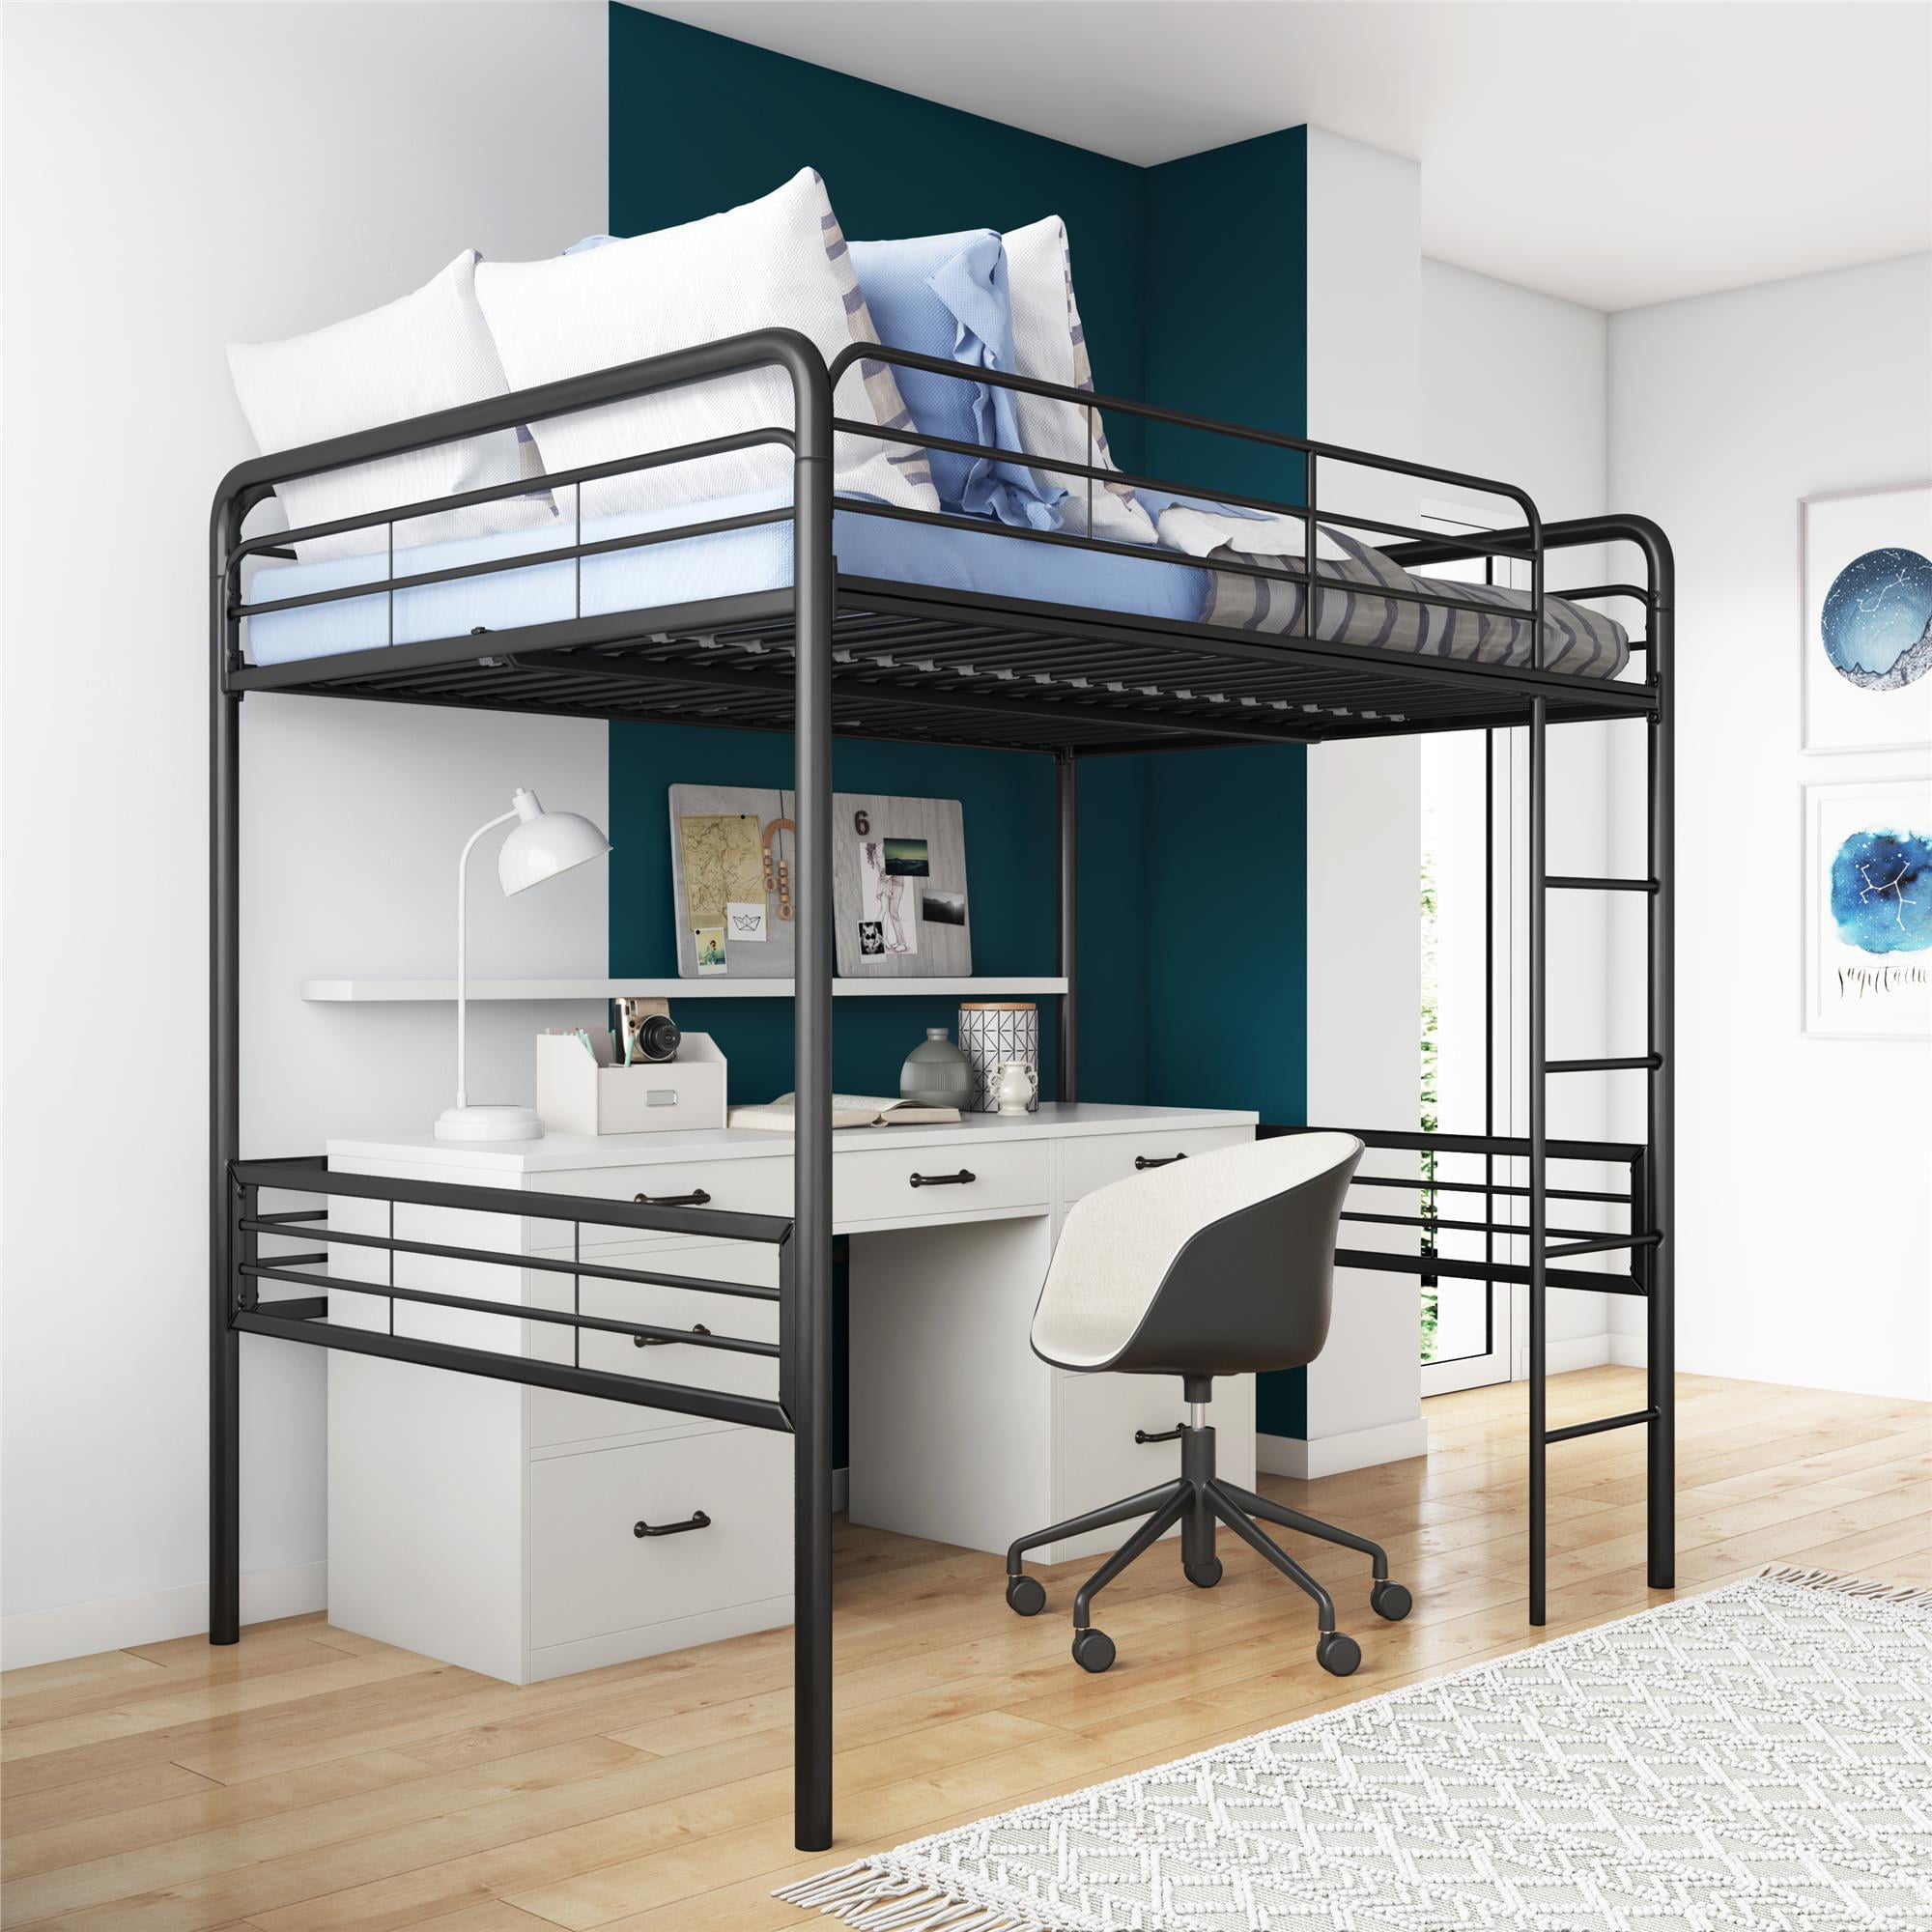 Details about   Black Loft Bed Metal Bed Frame W/ Ladder For Boys Girls Teens Kids Bedroom Dorm 